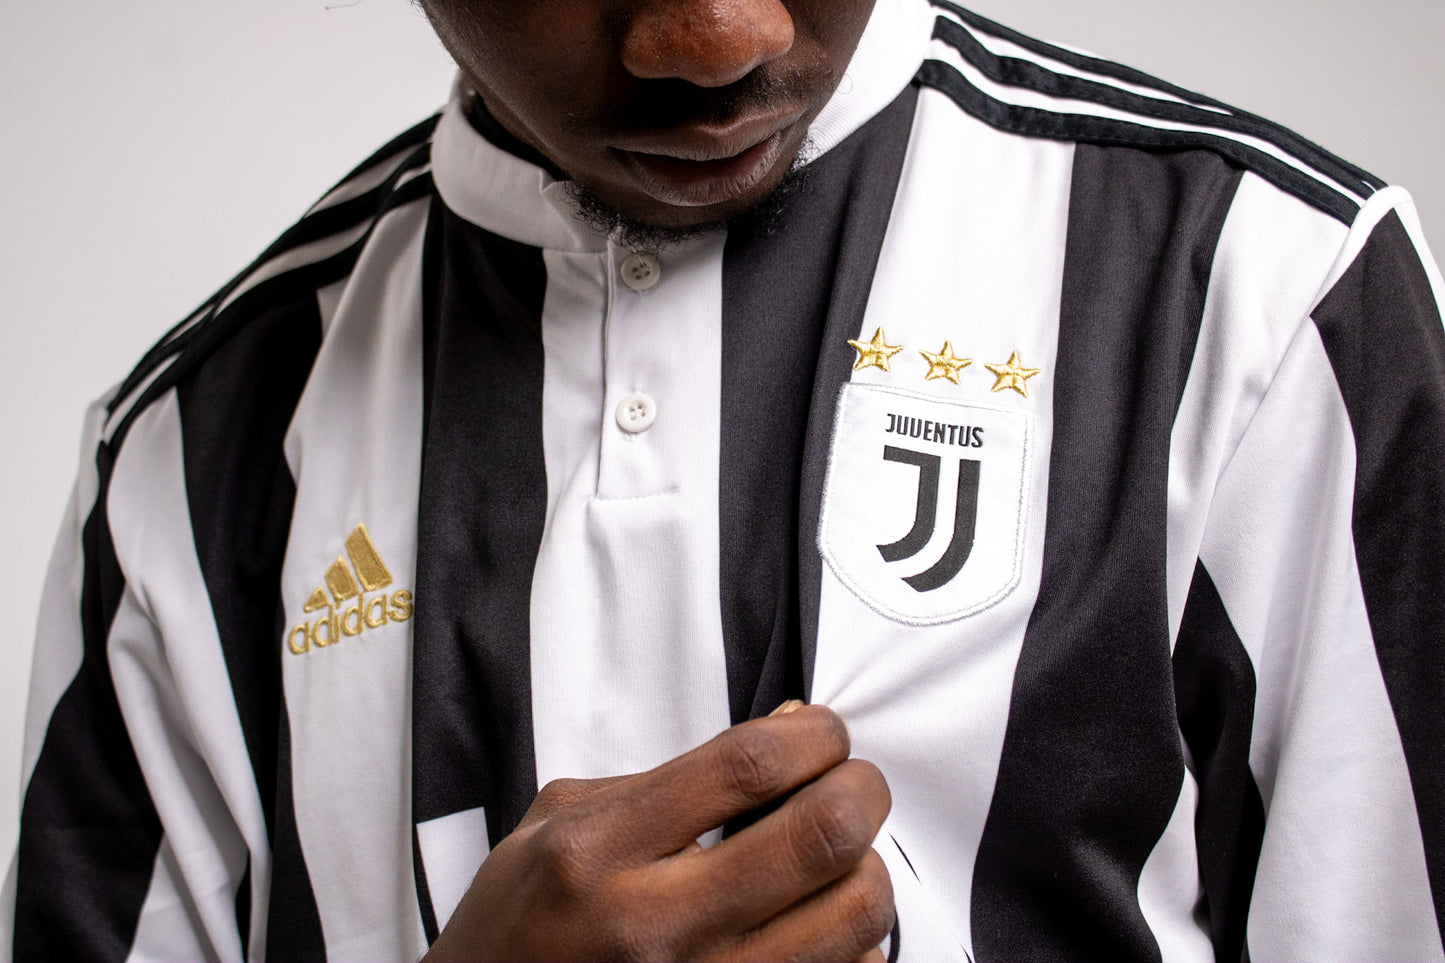 Adidas Juventus Home Jersey